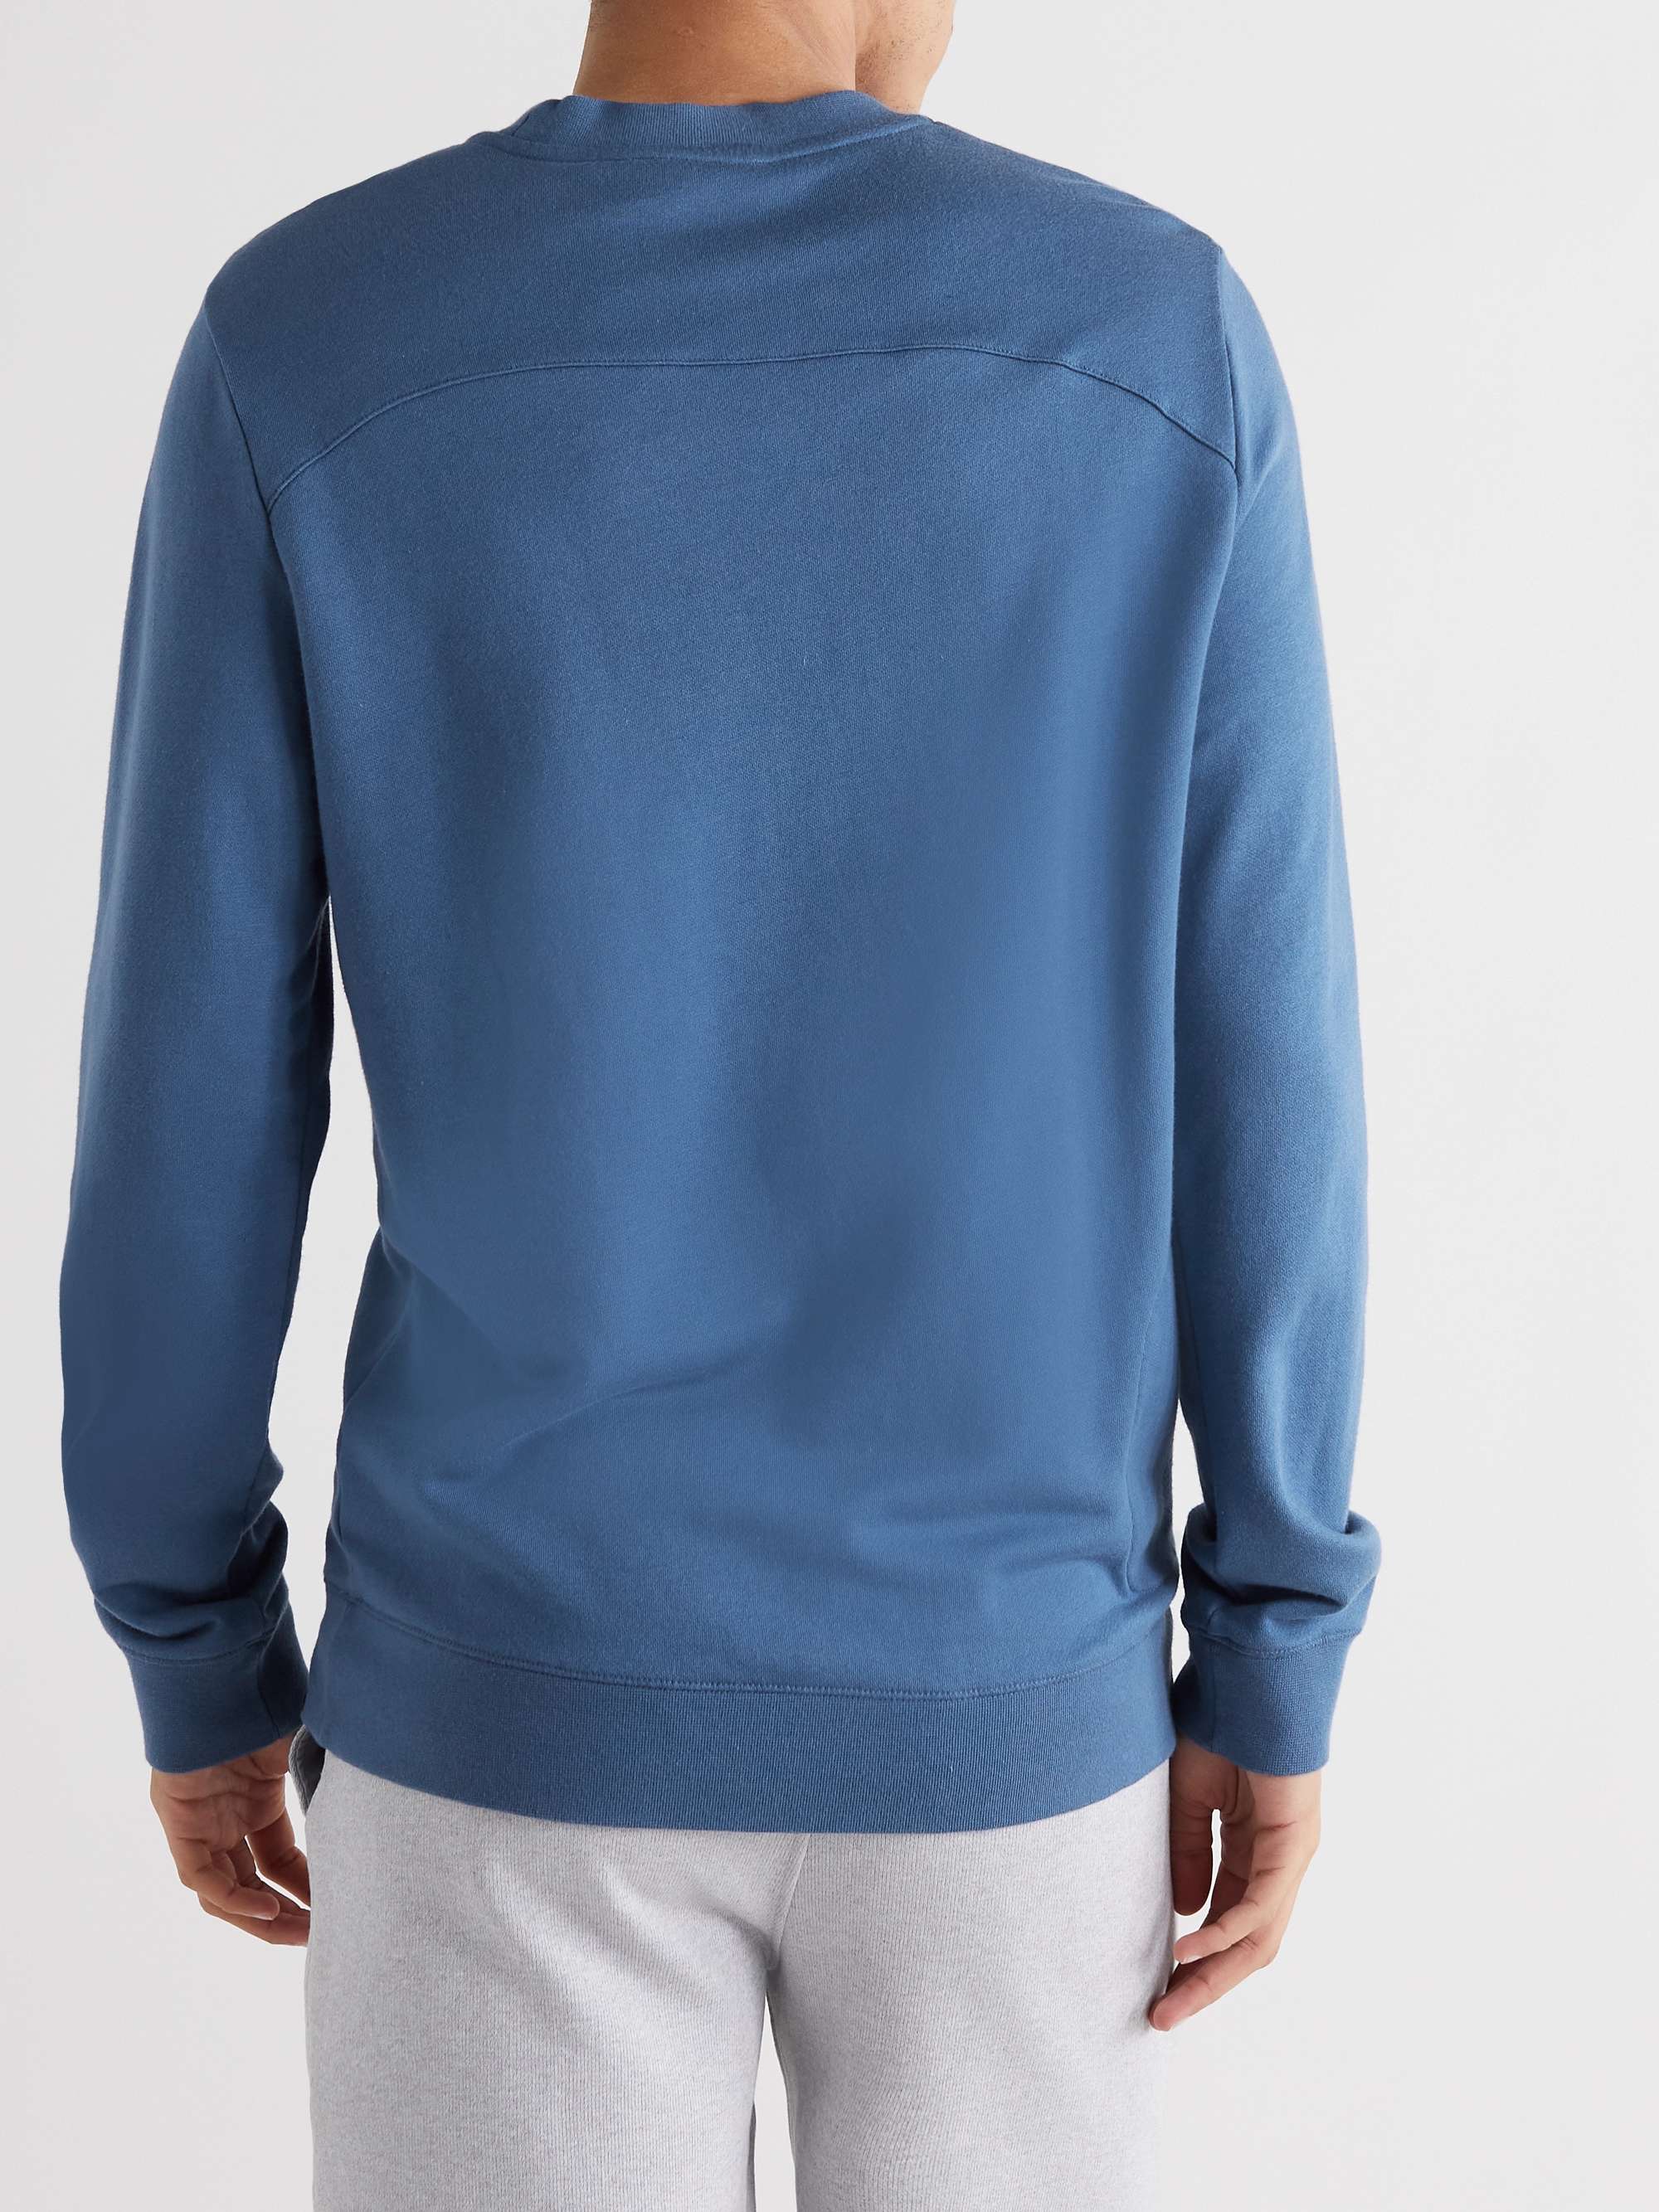 DEREK ROSE Quinn 2 Cotton and Modal-Blend Jersey Sweatshirt